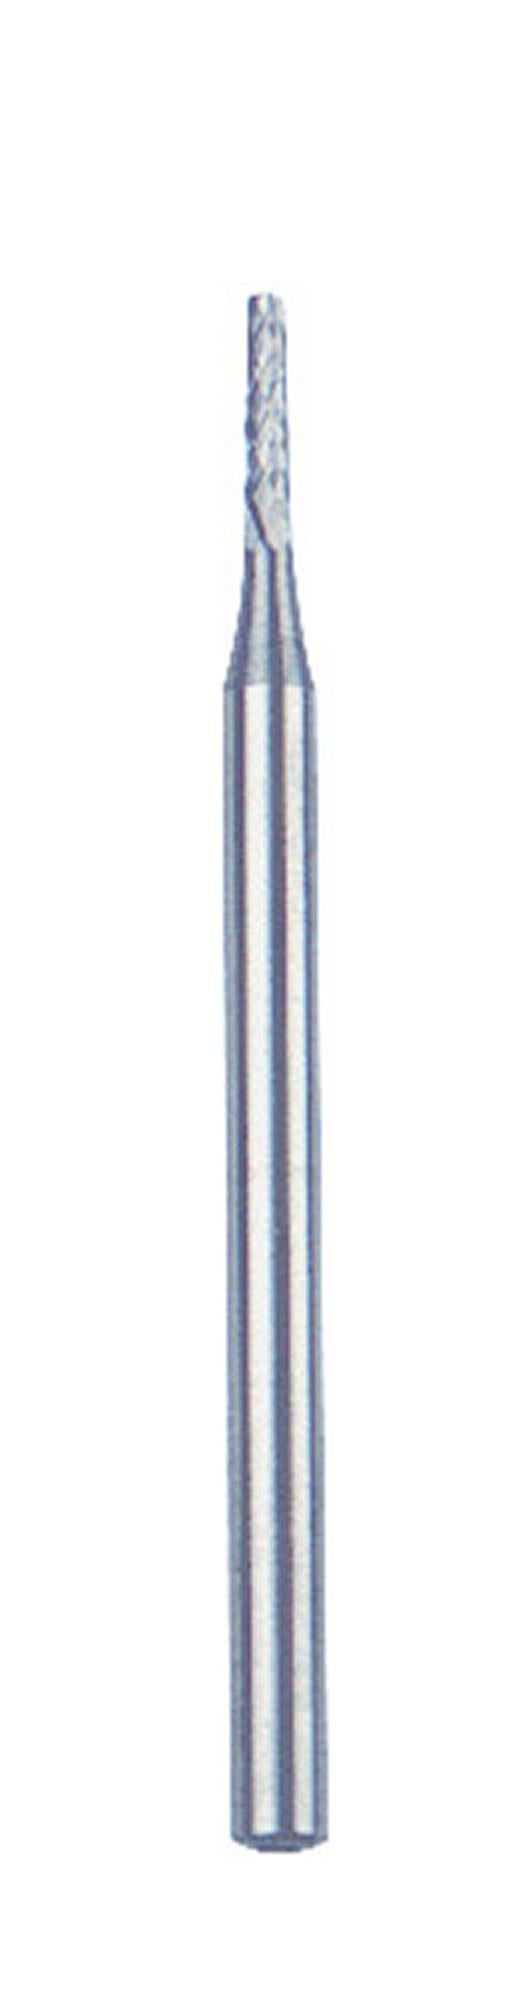 DREMEL - Fraise à Déjointer en Carbure - Pour Joints Carrelage - Ø1.6mm  (569)